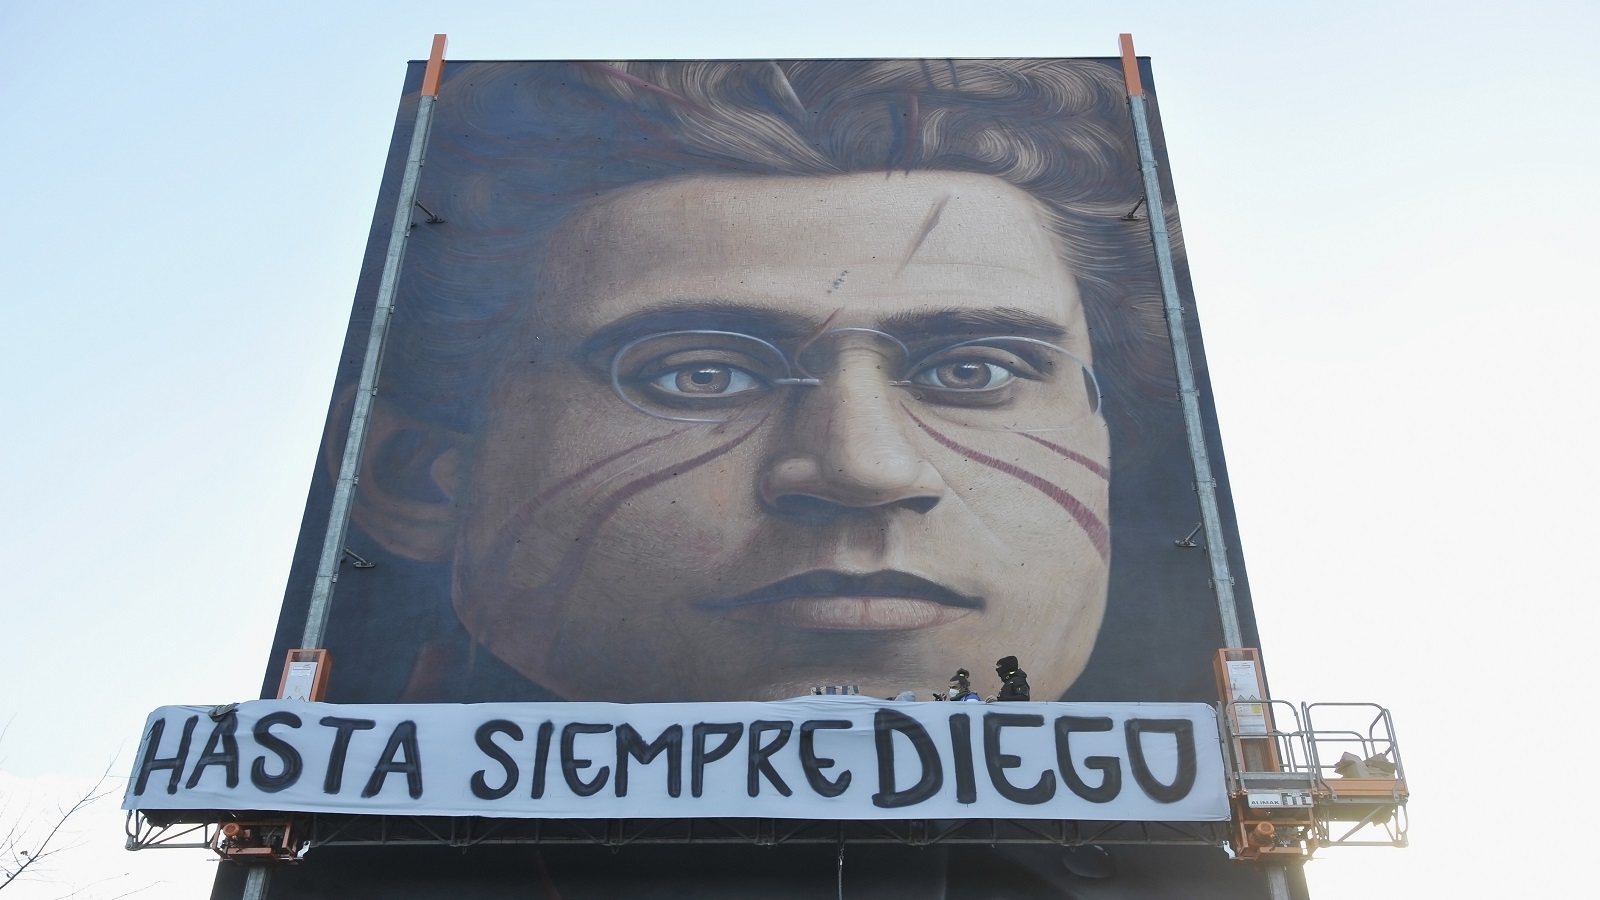 غرامشي في بوينس آيريس: "إلى الأبد دييغو" (غيتي)